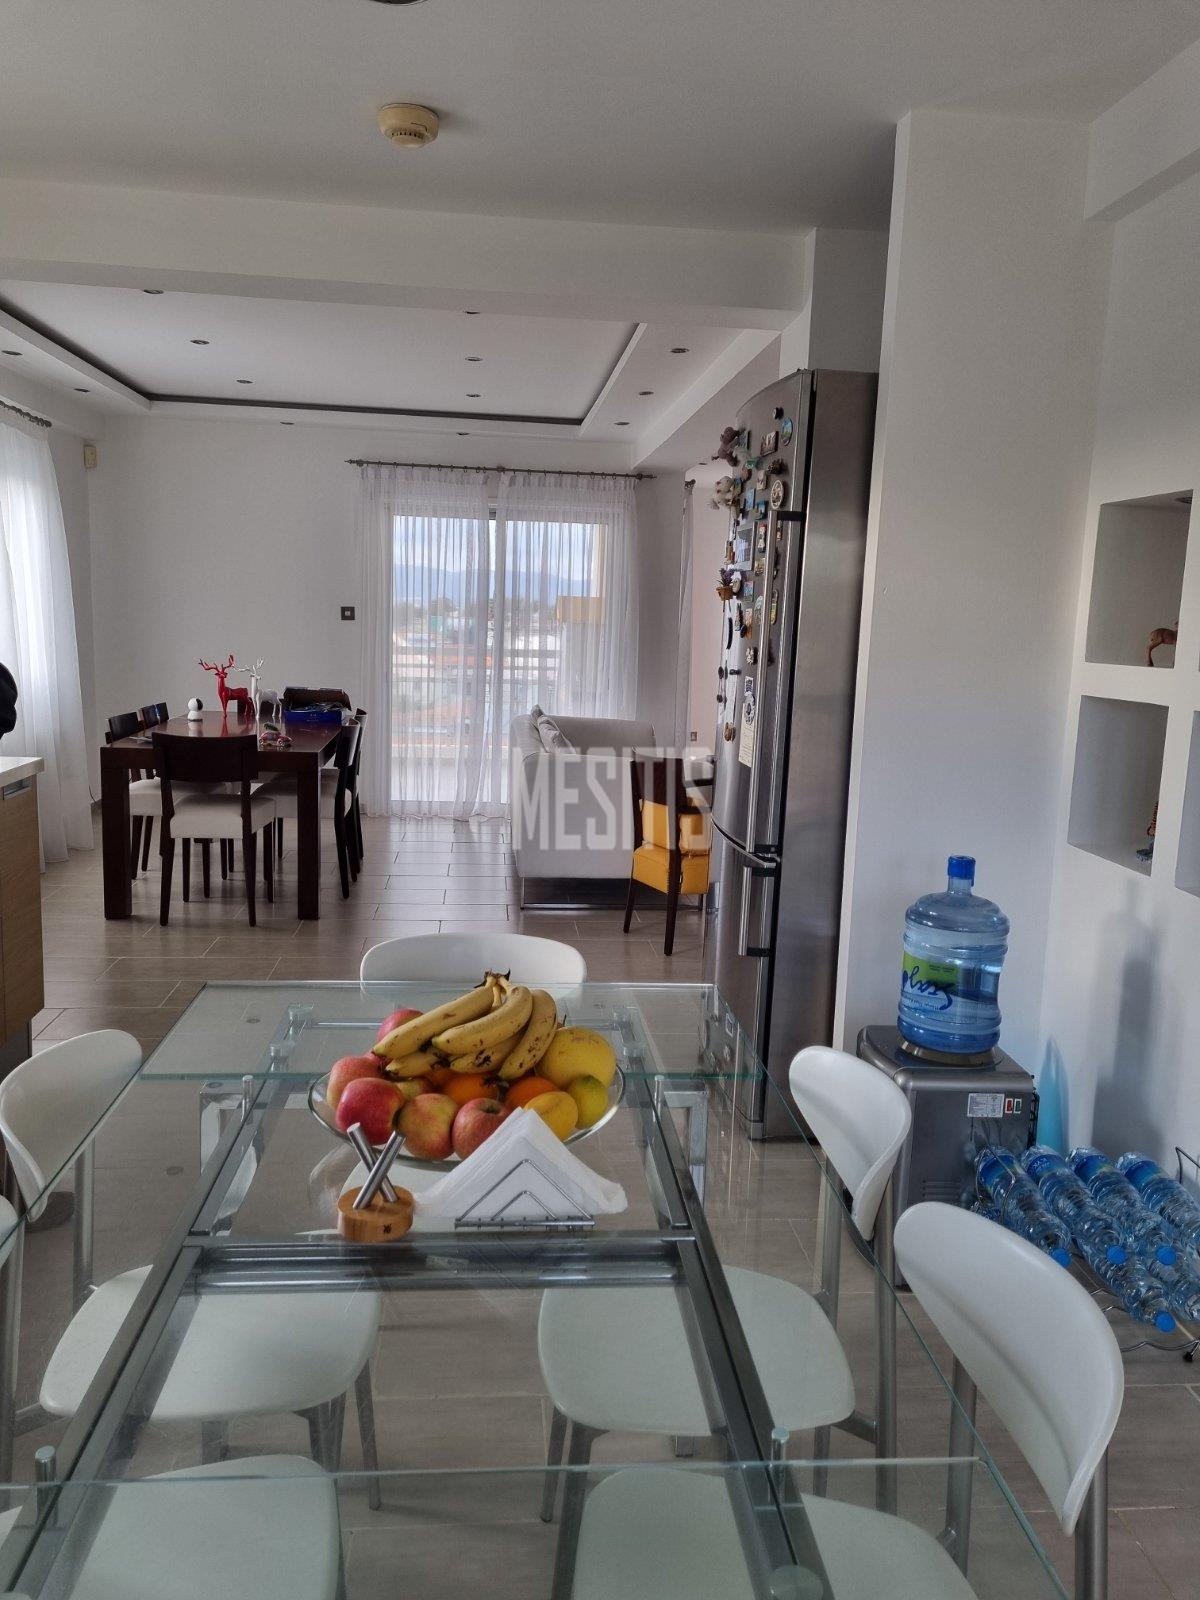 3 Βedroom Τop Floor Apartment For Sale In A Prime Location With Large Spaces And Incredible Aesthetics Αnd Views To All Of Nicosia #30861-5